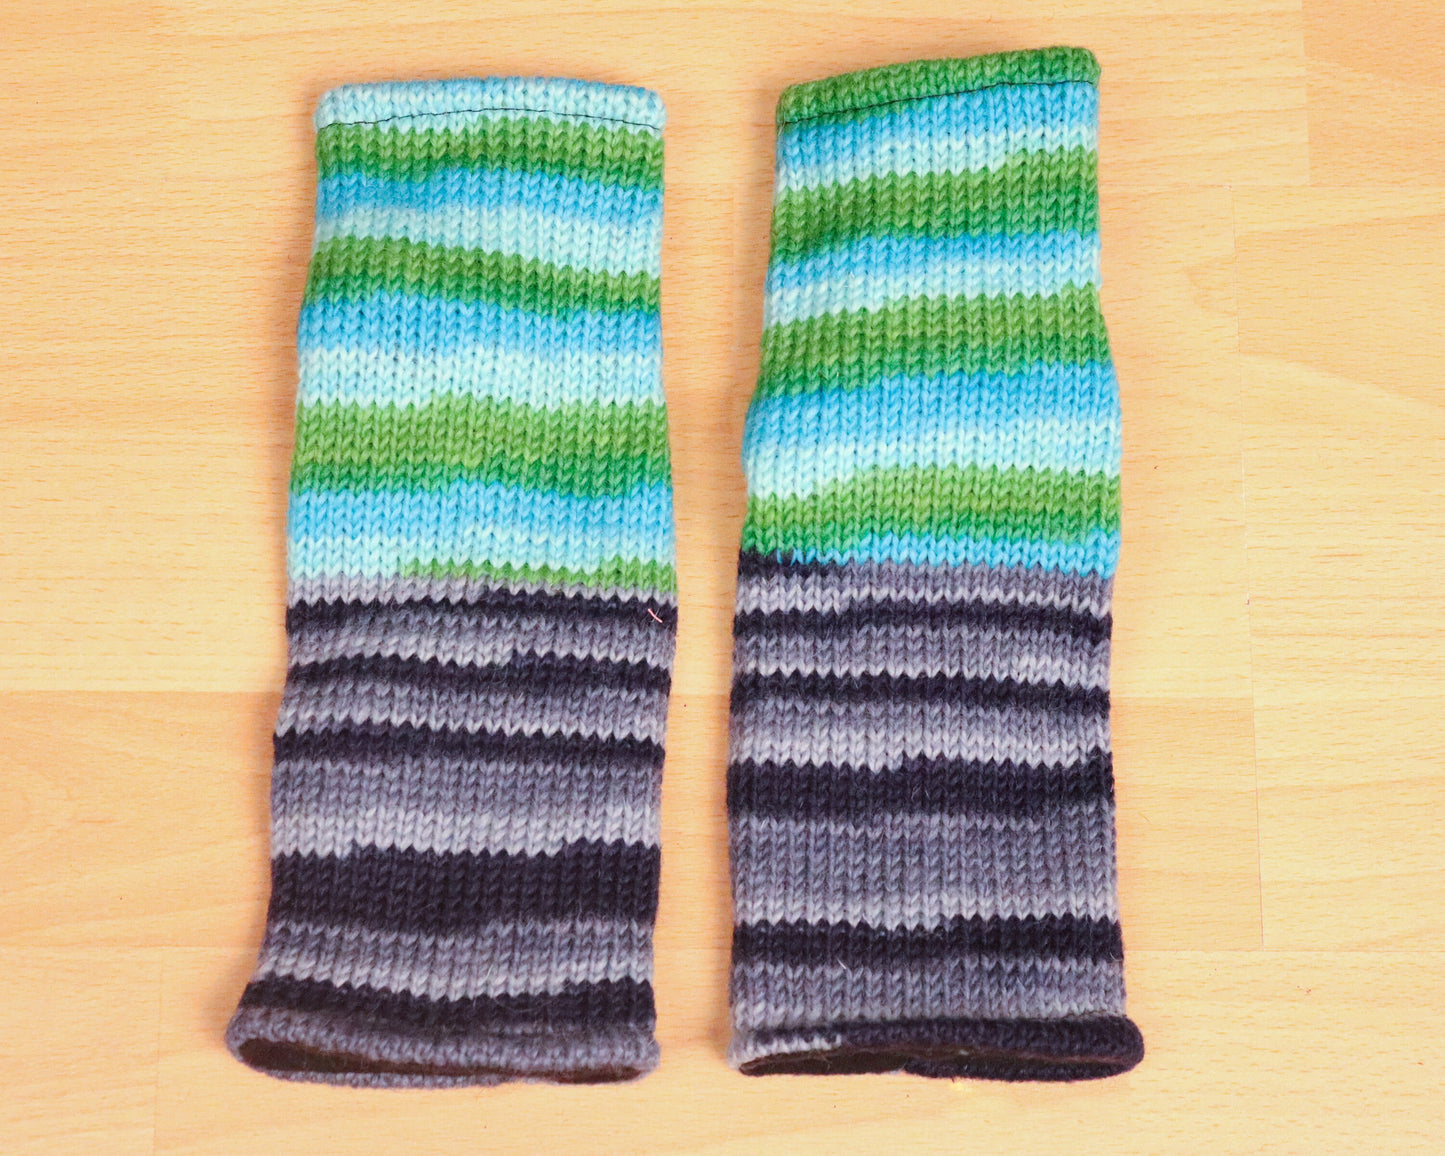 Chauffe-poignets tricotés doublés de polaire - Rayé bleu et vert